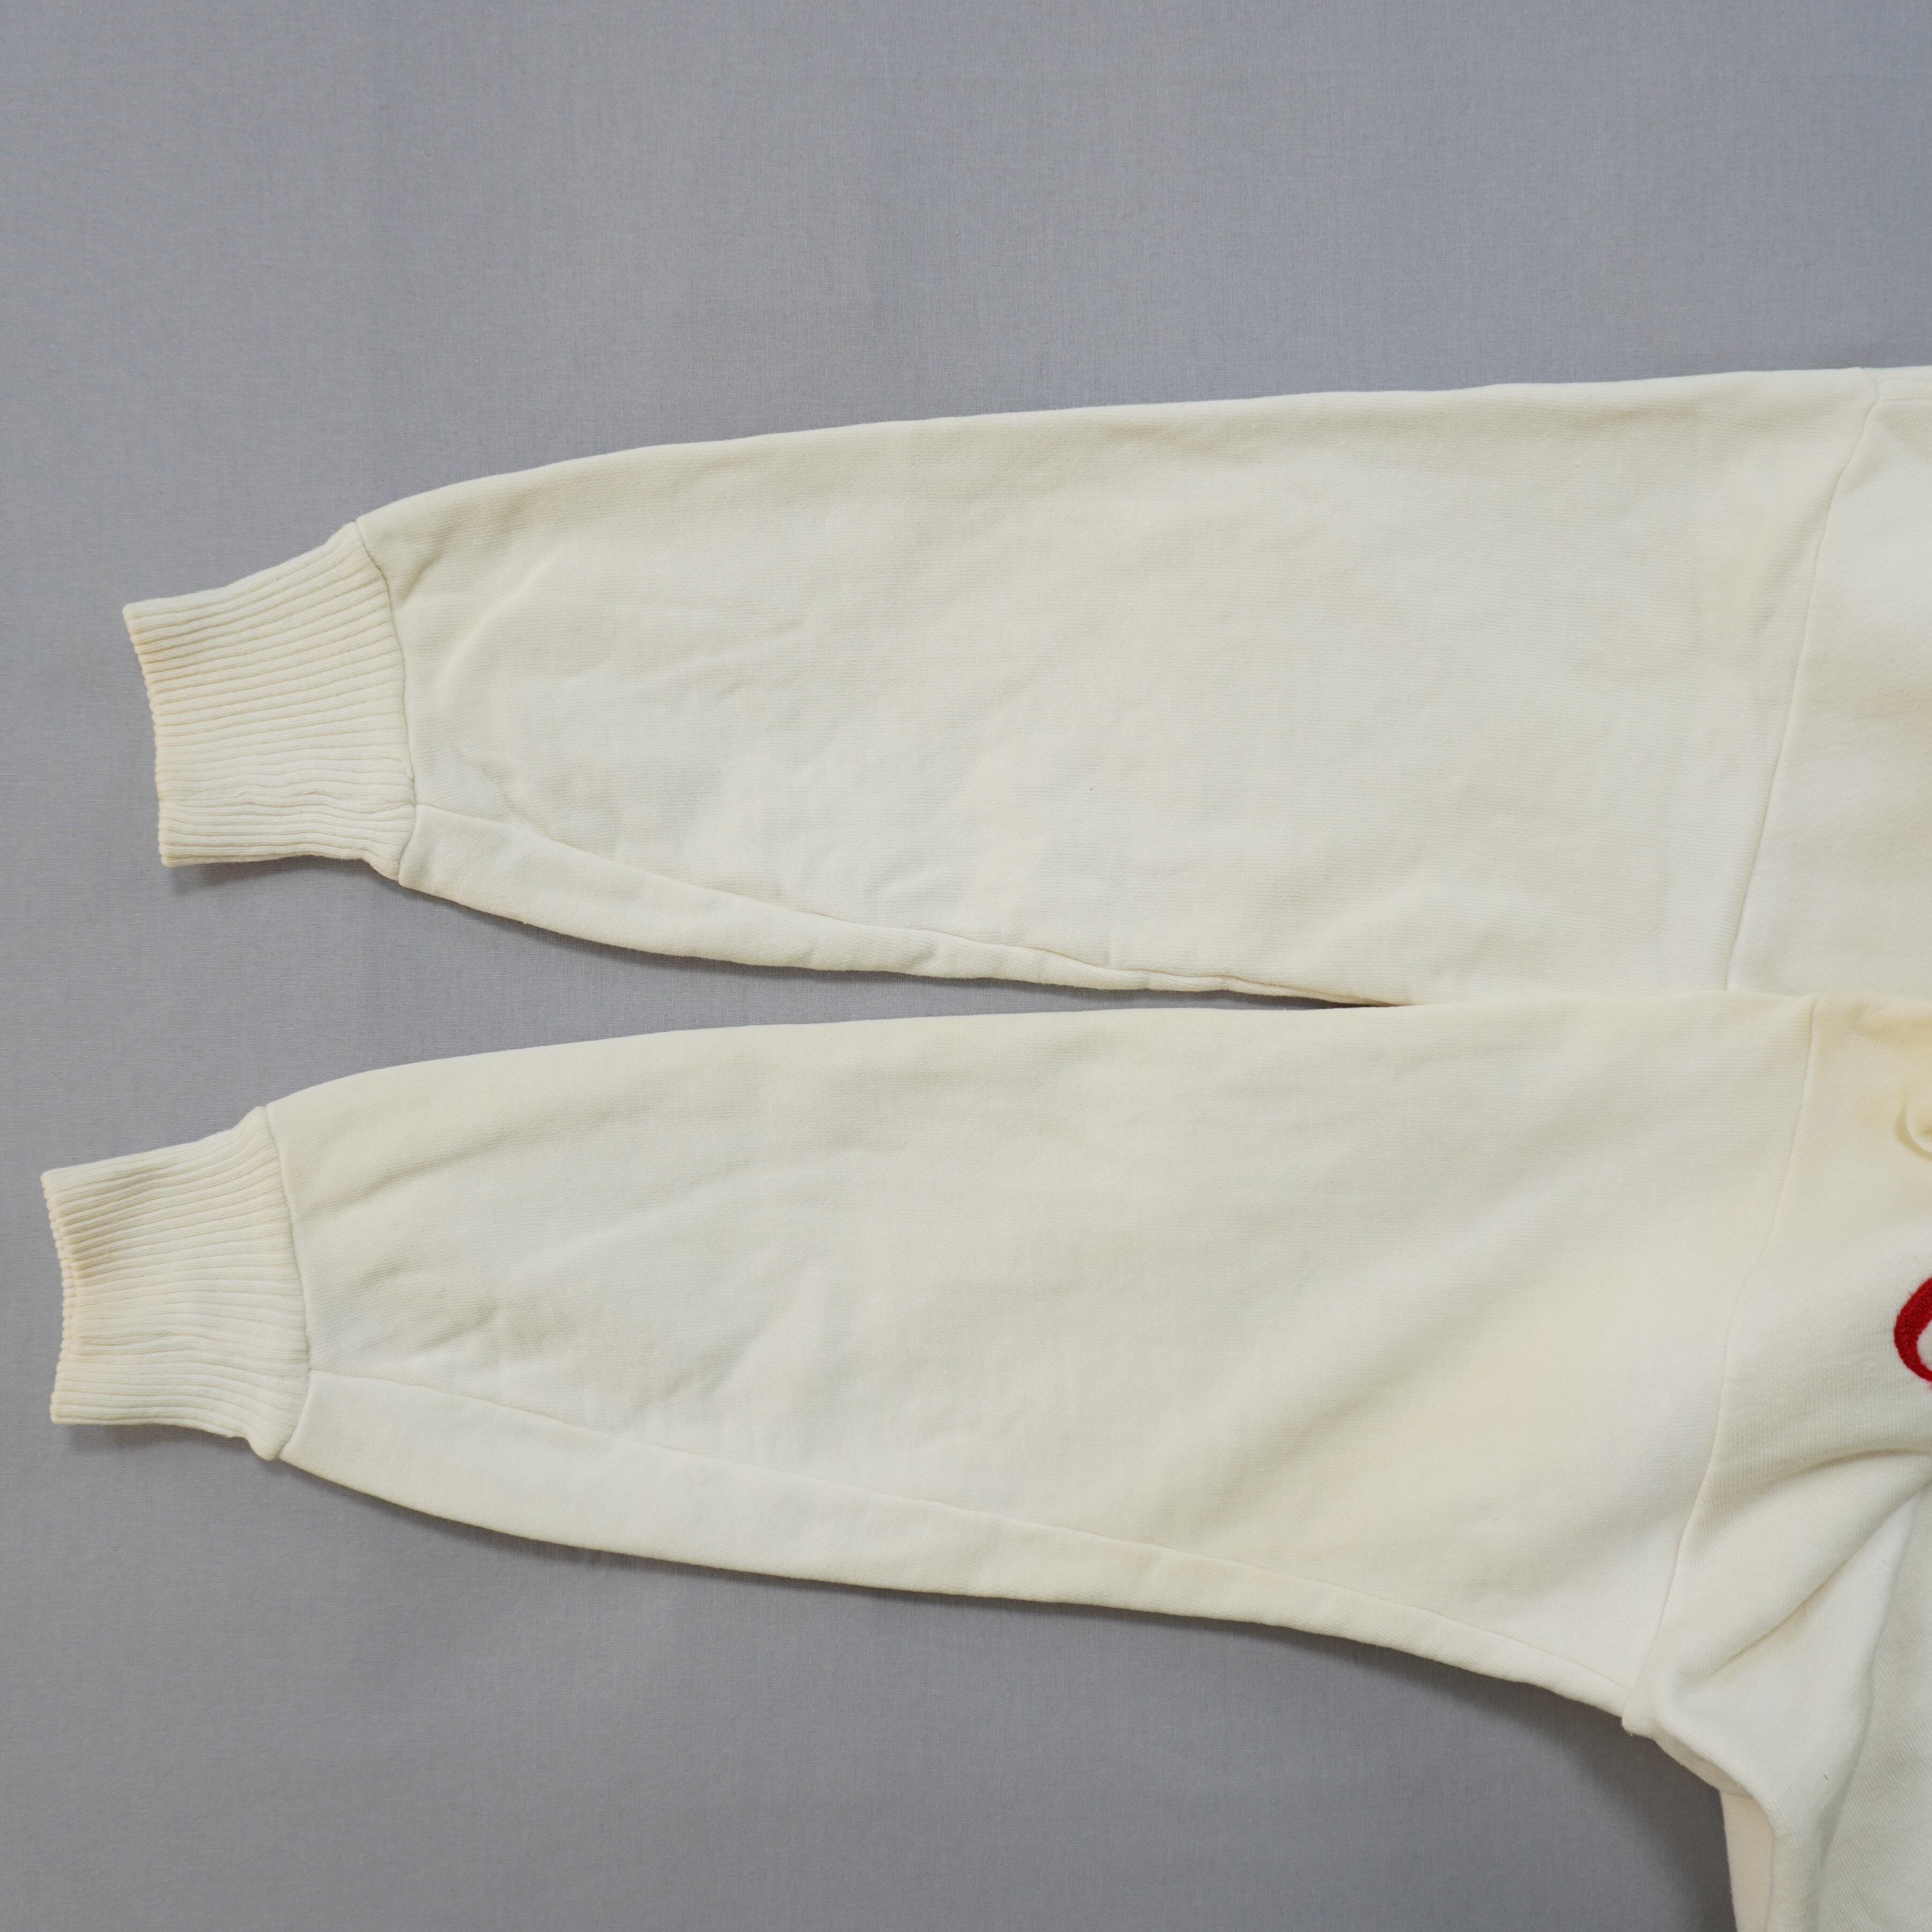 AKOM FULL ZIP Sweatshirts 1950s USA M